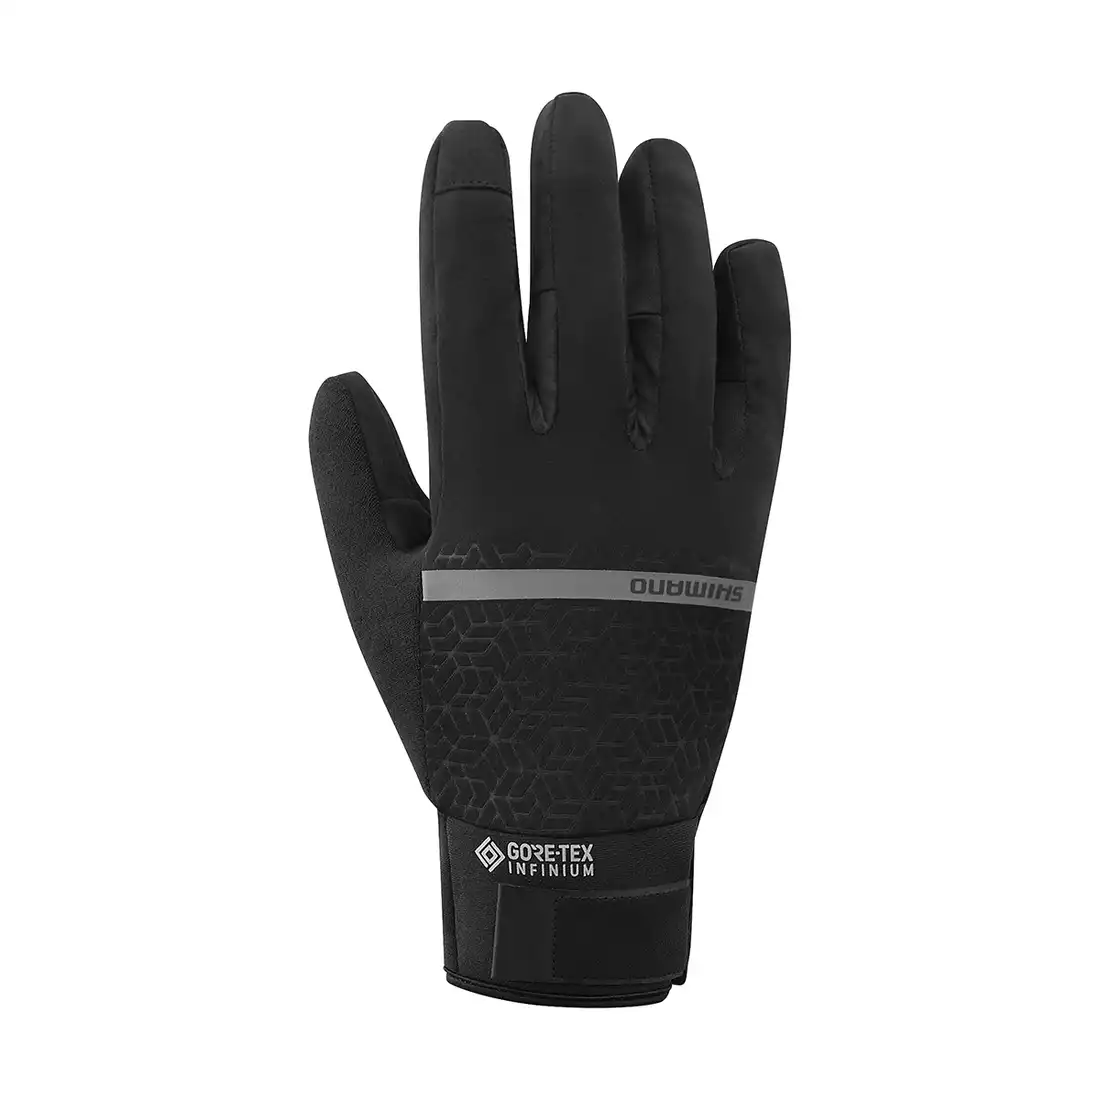 SHIMANO mănuși de ciclism de iarnă Infinium Insulated ECWGLBWUS35ML0104 negru